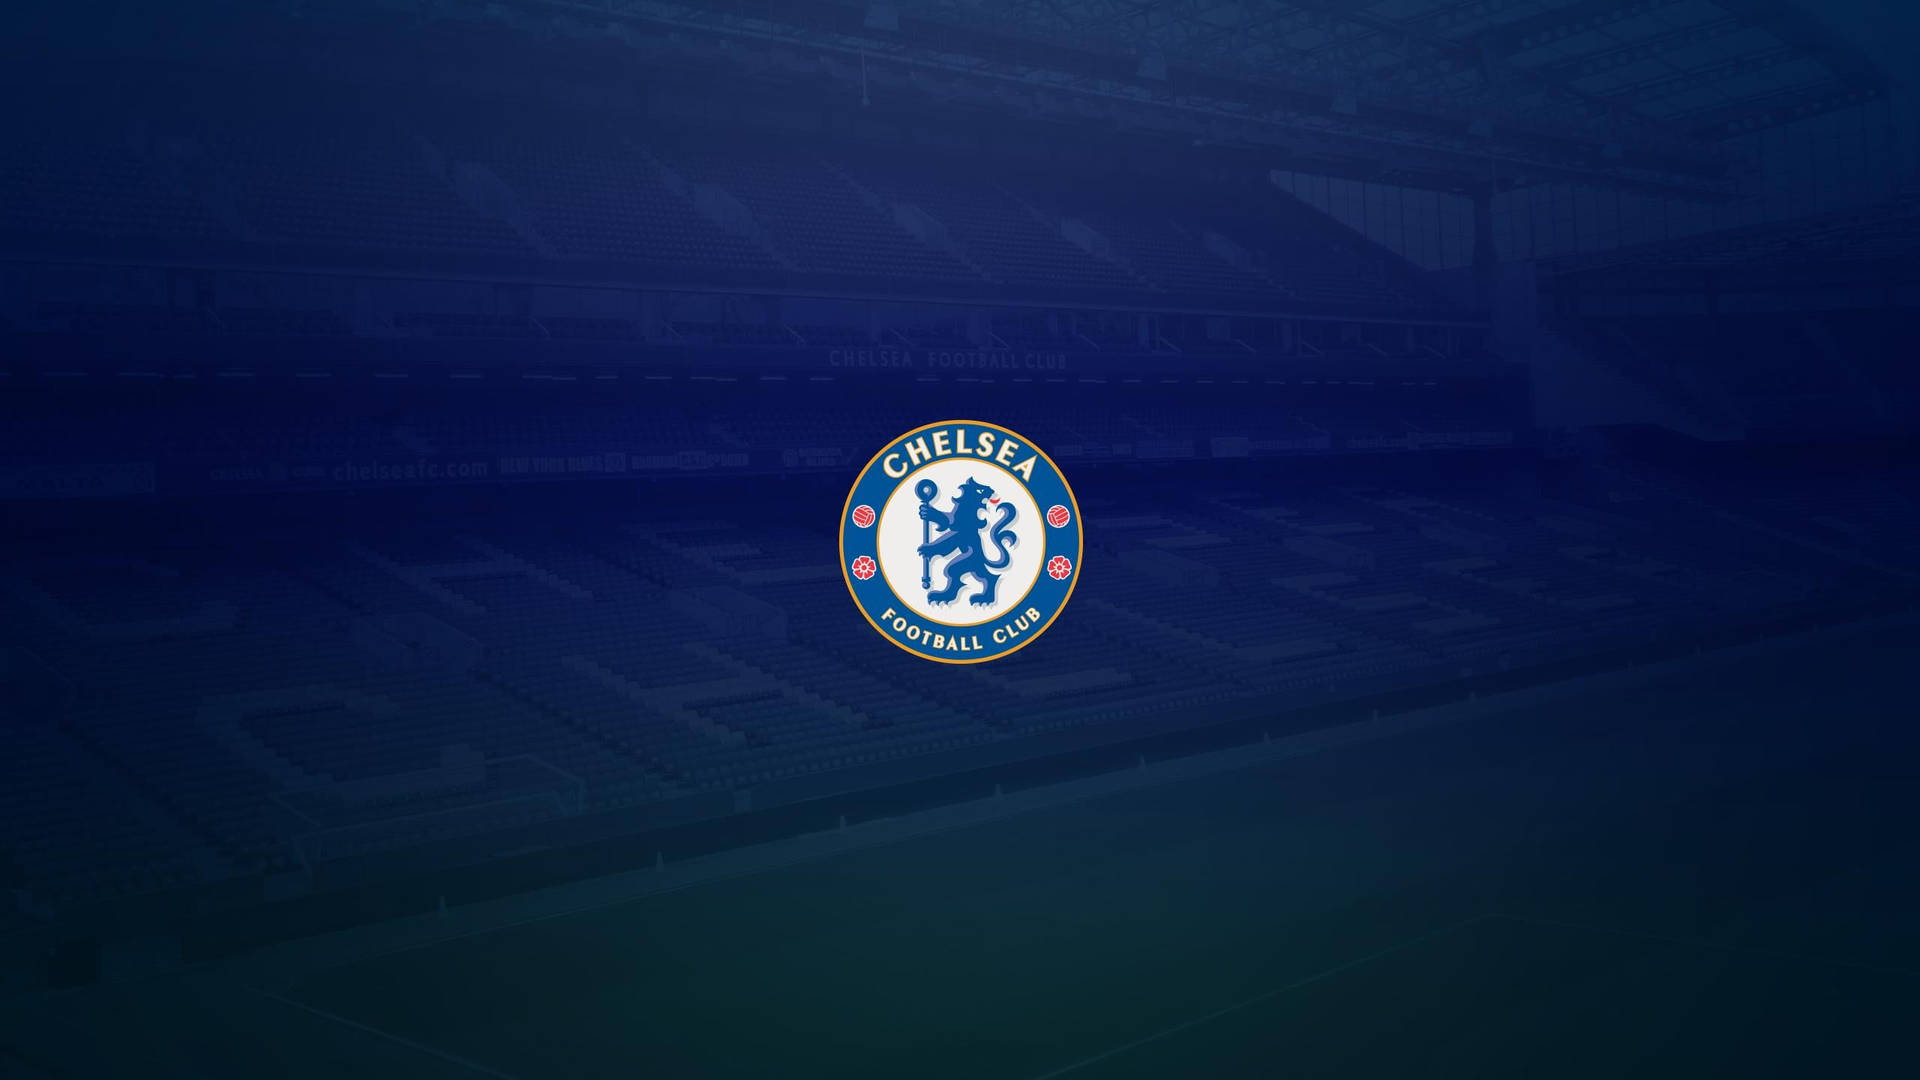 Chelsea Fc Logo On Football Field Wallpaper